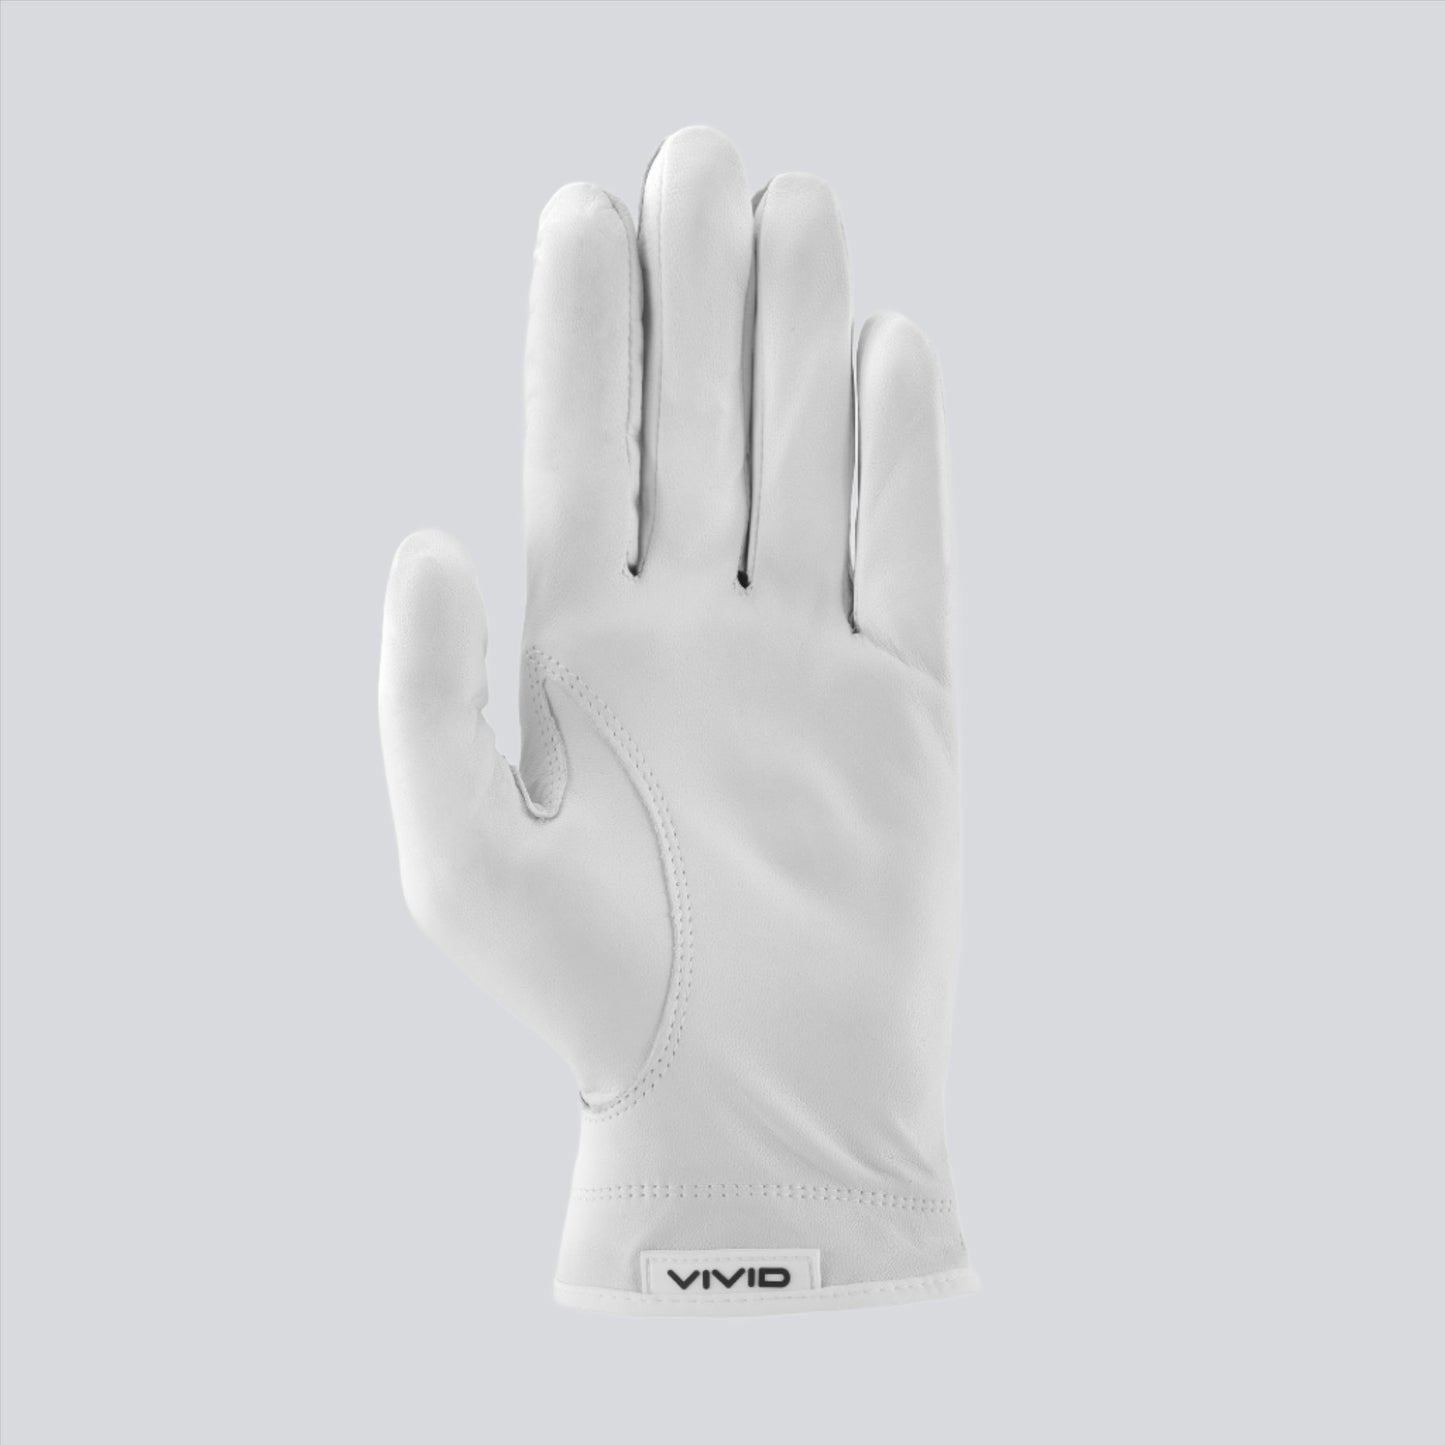 Premium Cabretta Leather Golf Glove Black / White